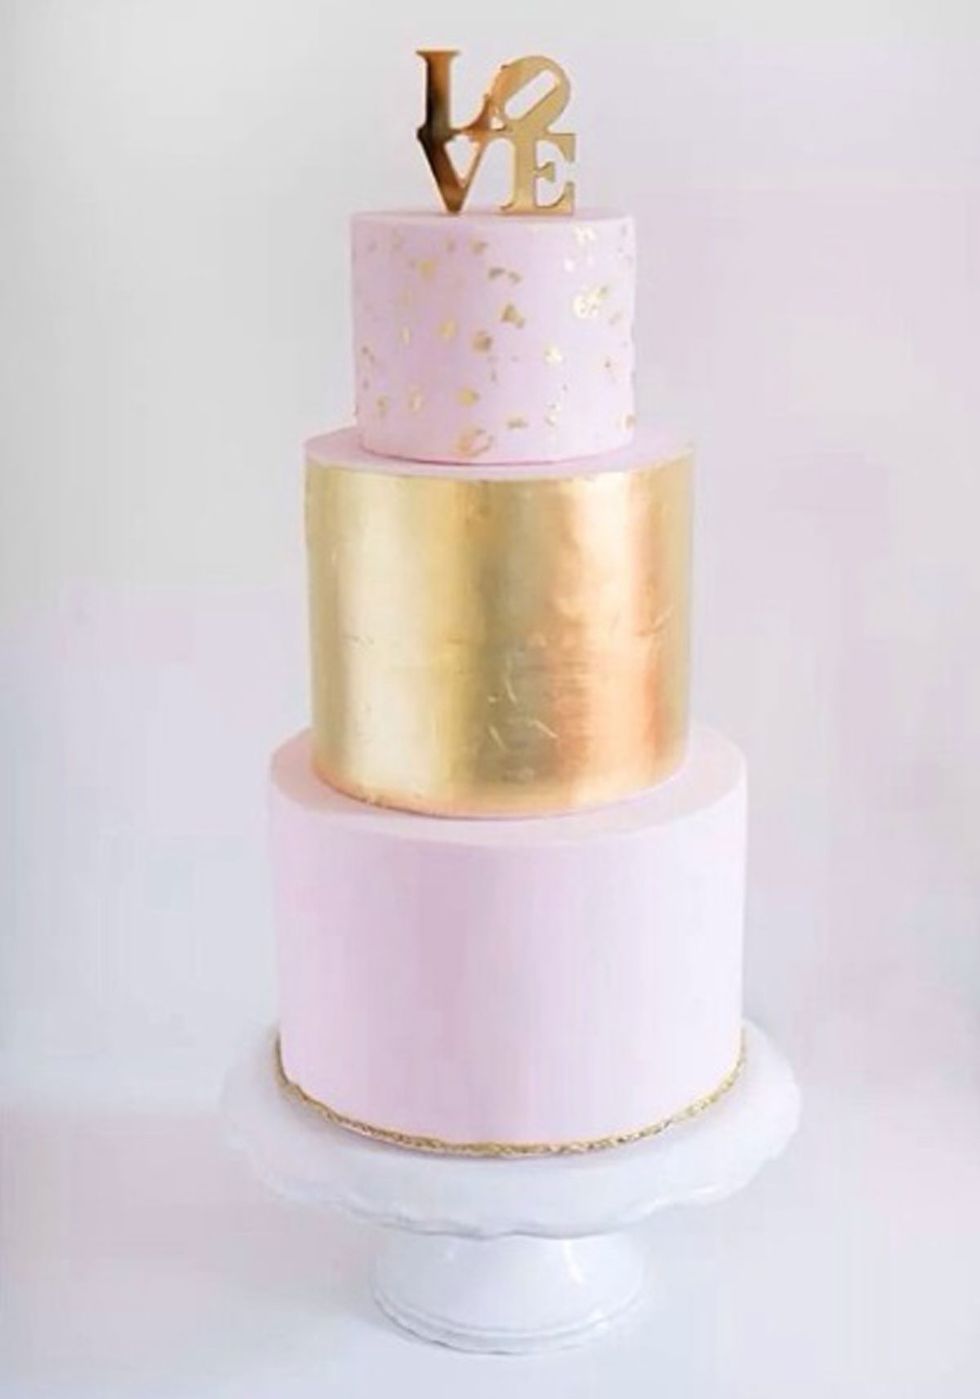 White, Wedding cake, Pink, Sugar paste, Fondant, Buttercream, Icing, Cake, Sugar cake, Cake decorating, 